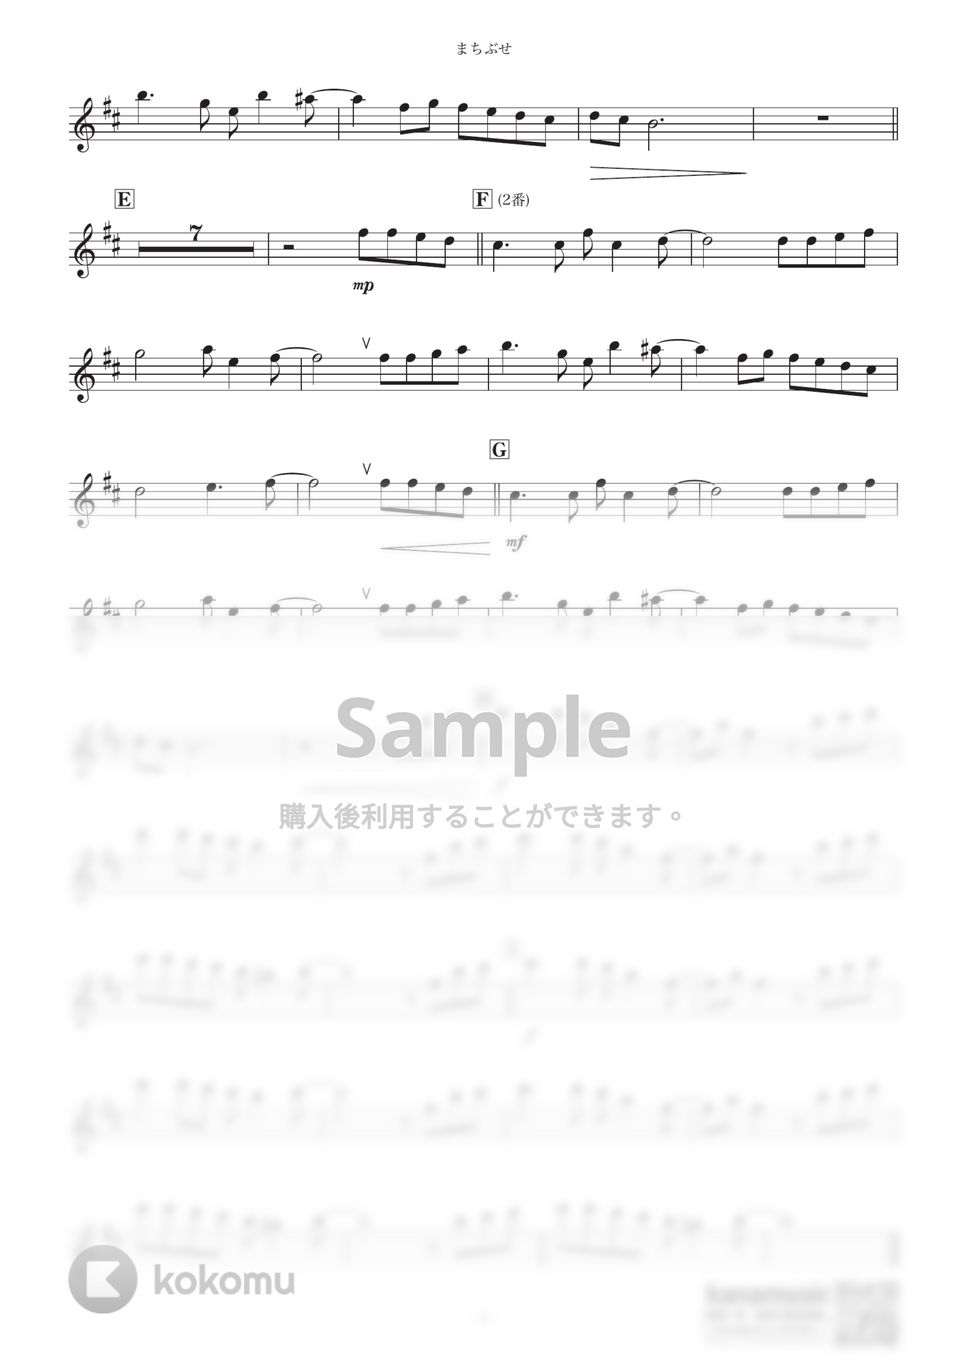 石川ひとみ - まちぶせ (B♭) by kanamusic